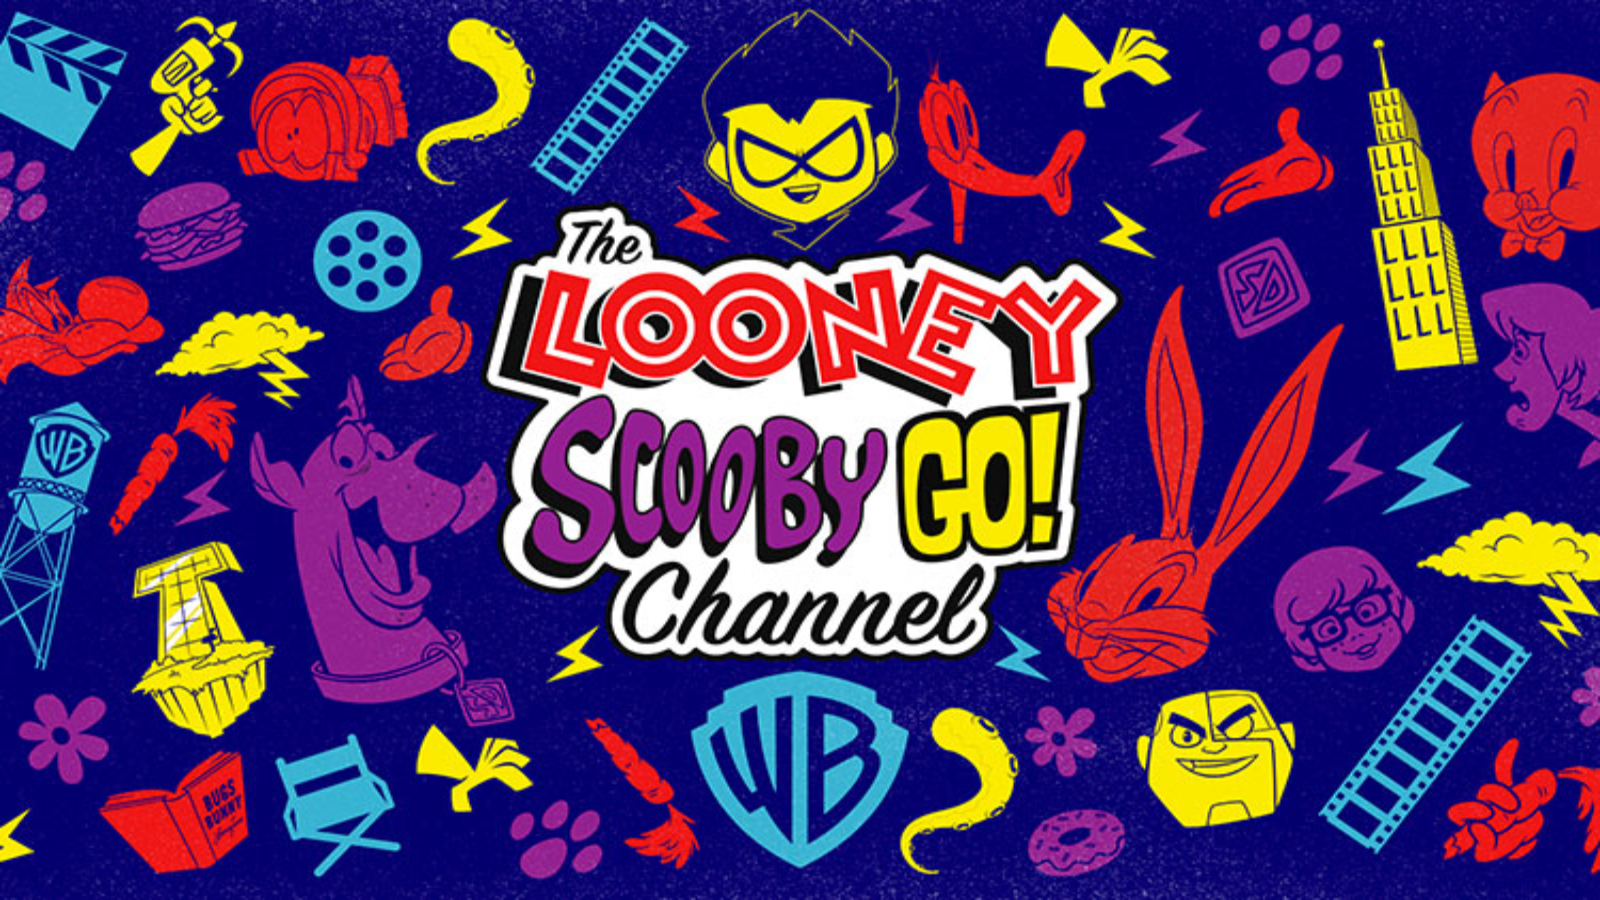 Warner Bros festeggia 100 anni con l'arrivo di The Looney Scooby Go! Channel